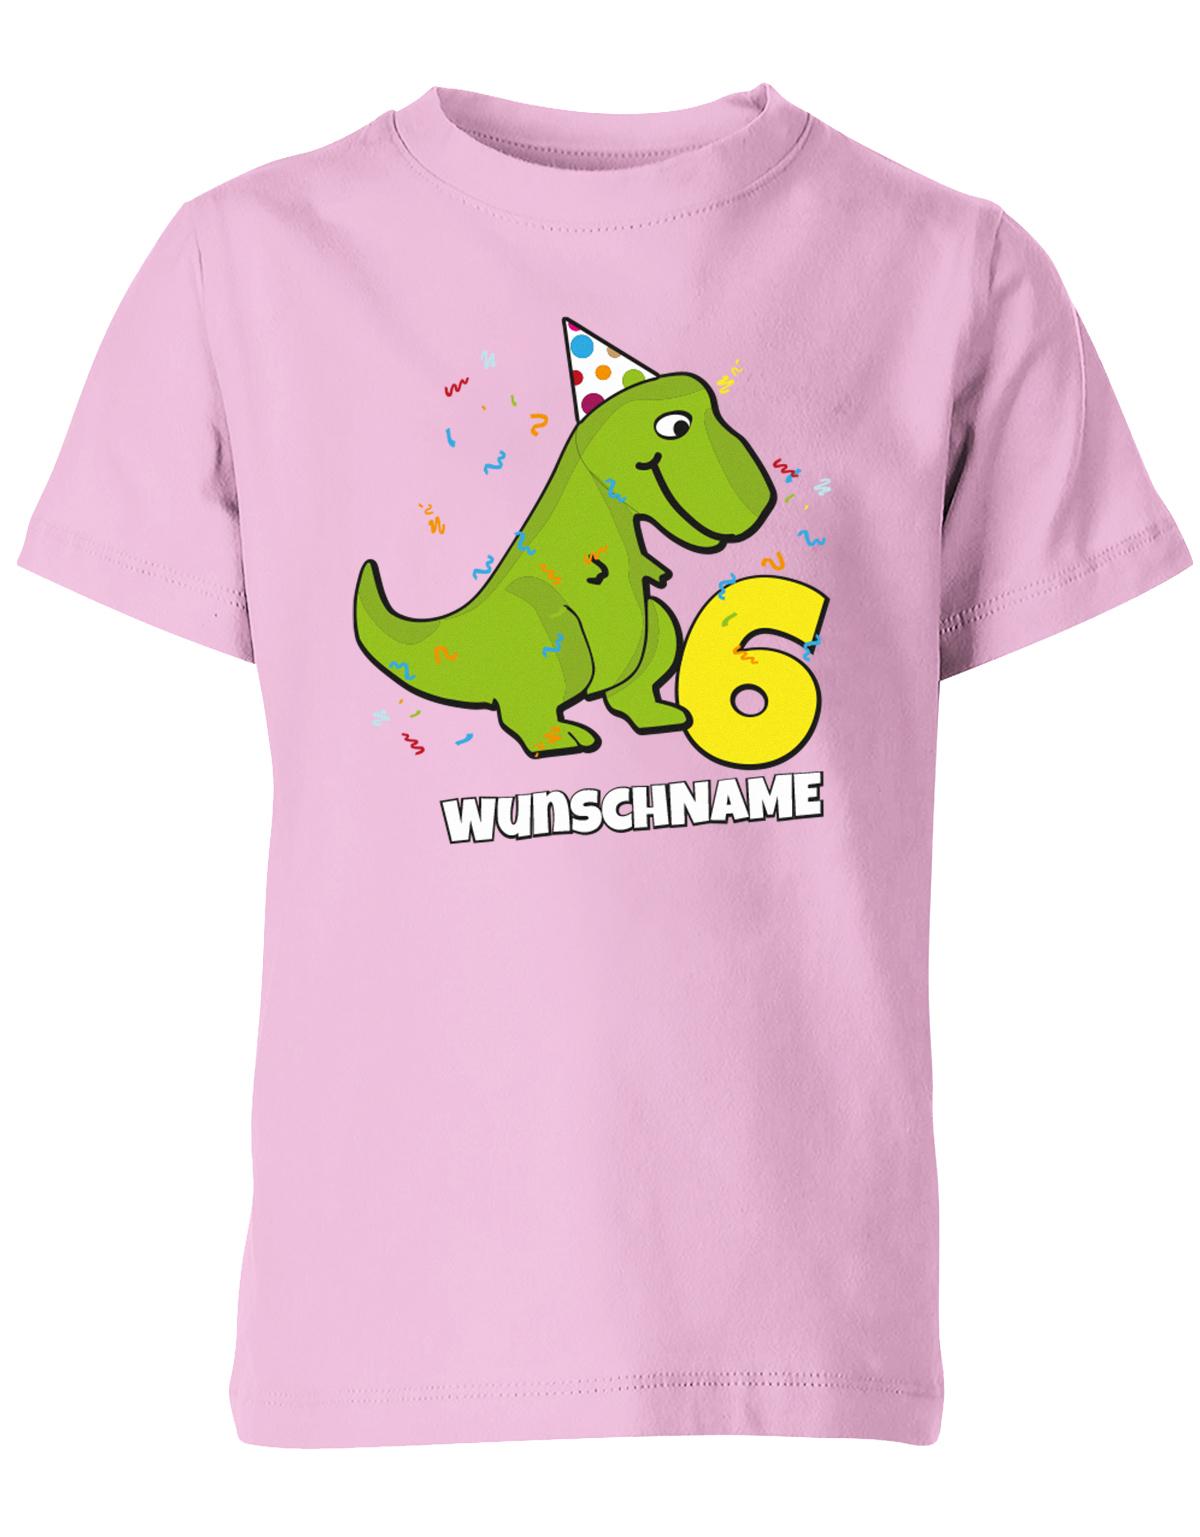 ich-bin-6-Dinosaurier-t-rex-wunschname-geburtstag-kinder-shirt-rosa